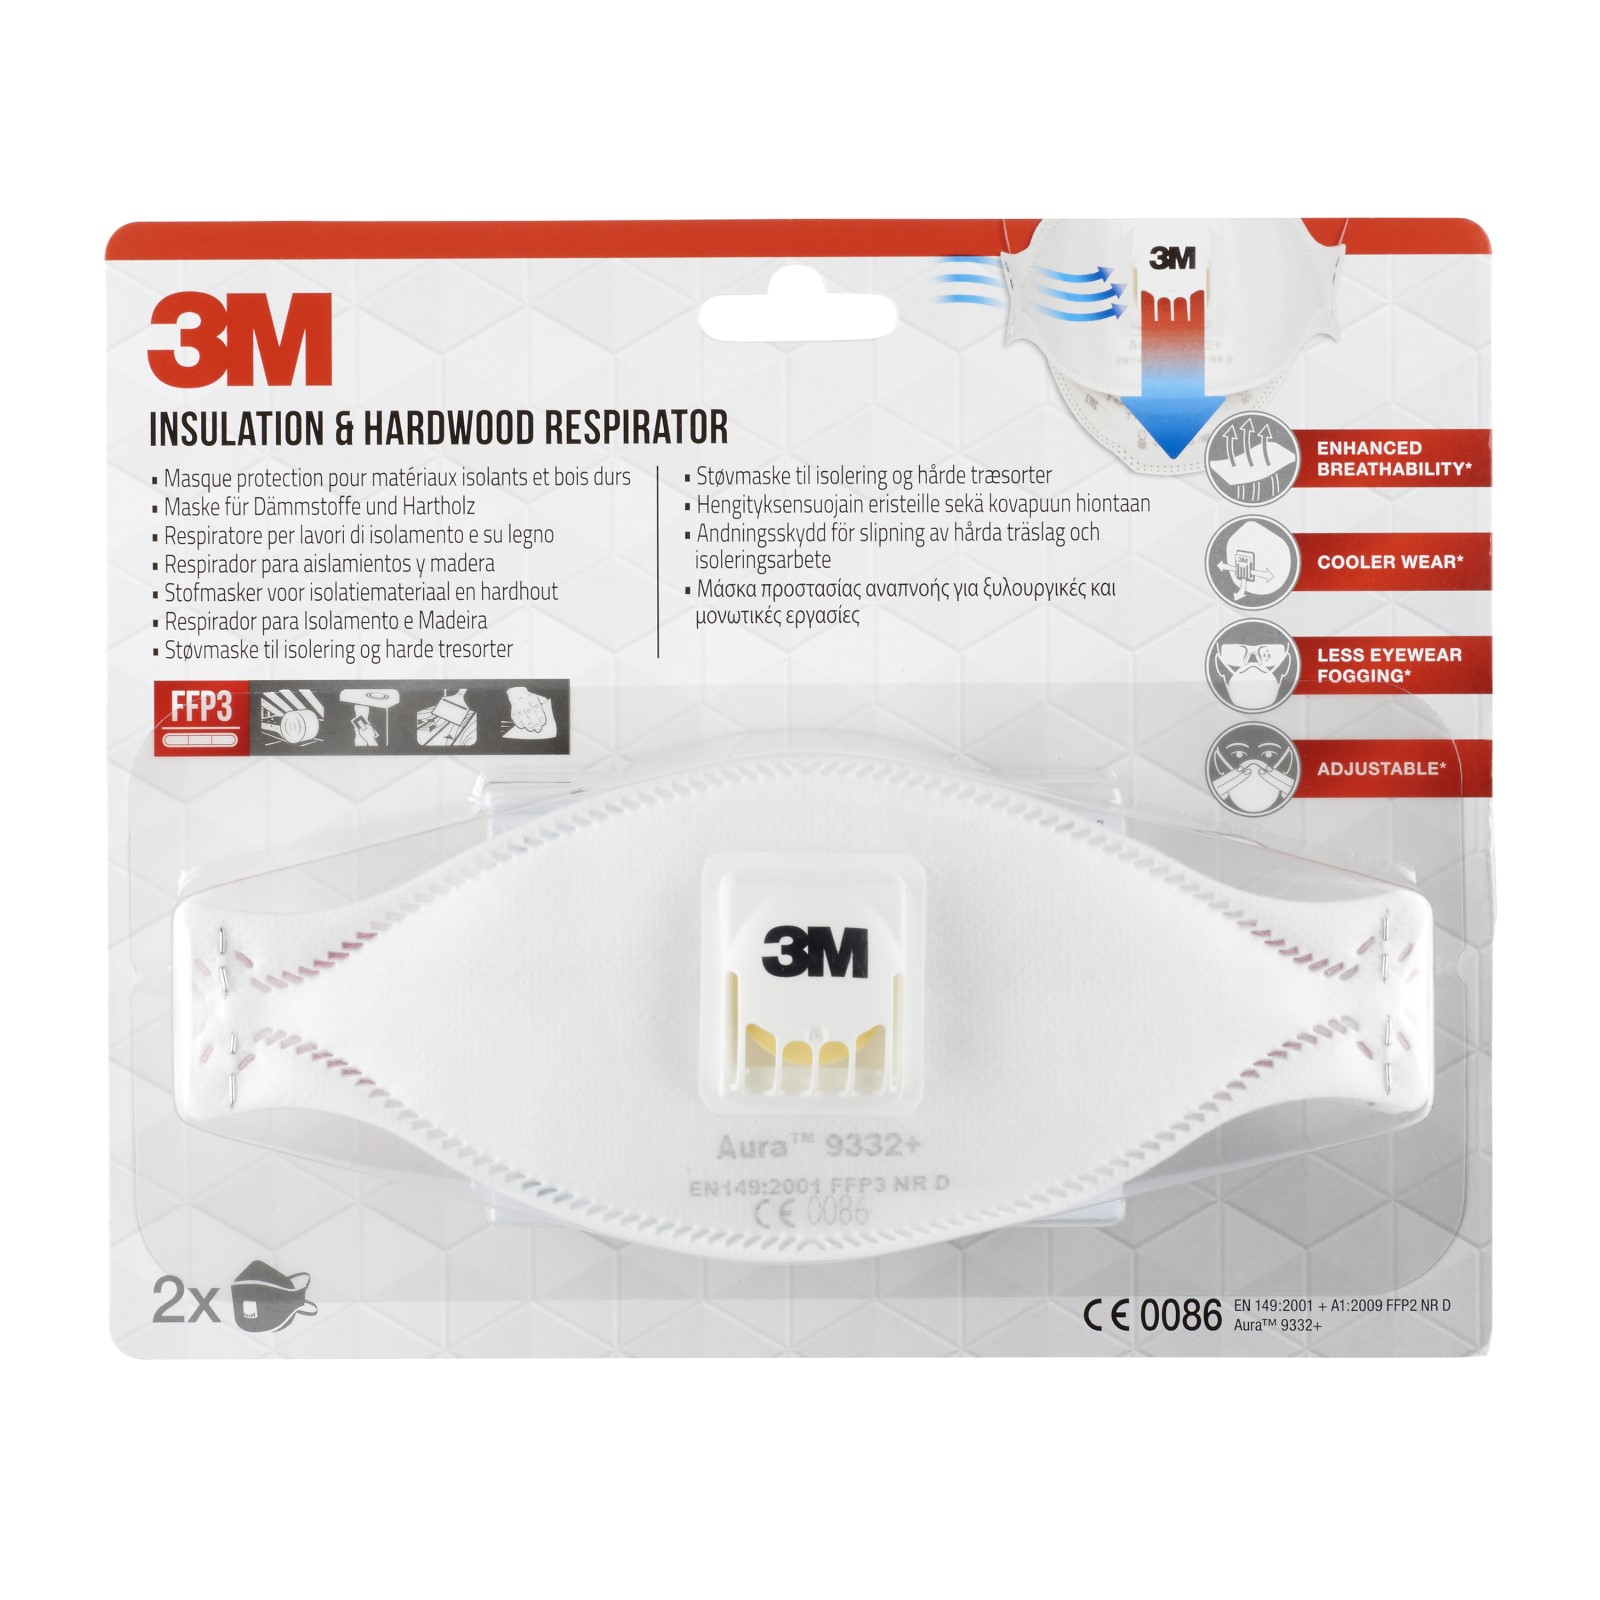 3M™ Aura™ Maske für Dämmstoffe und Hartholz 9332+, FFP3, mit Ventil, 2 pro Packung